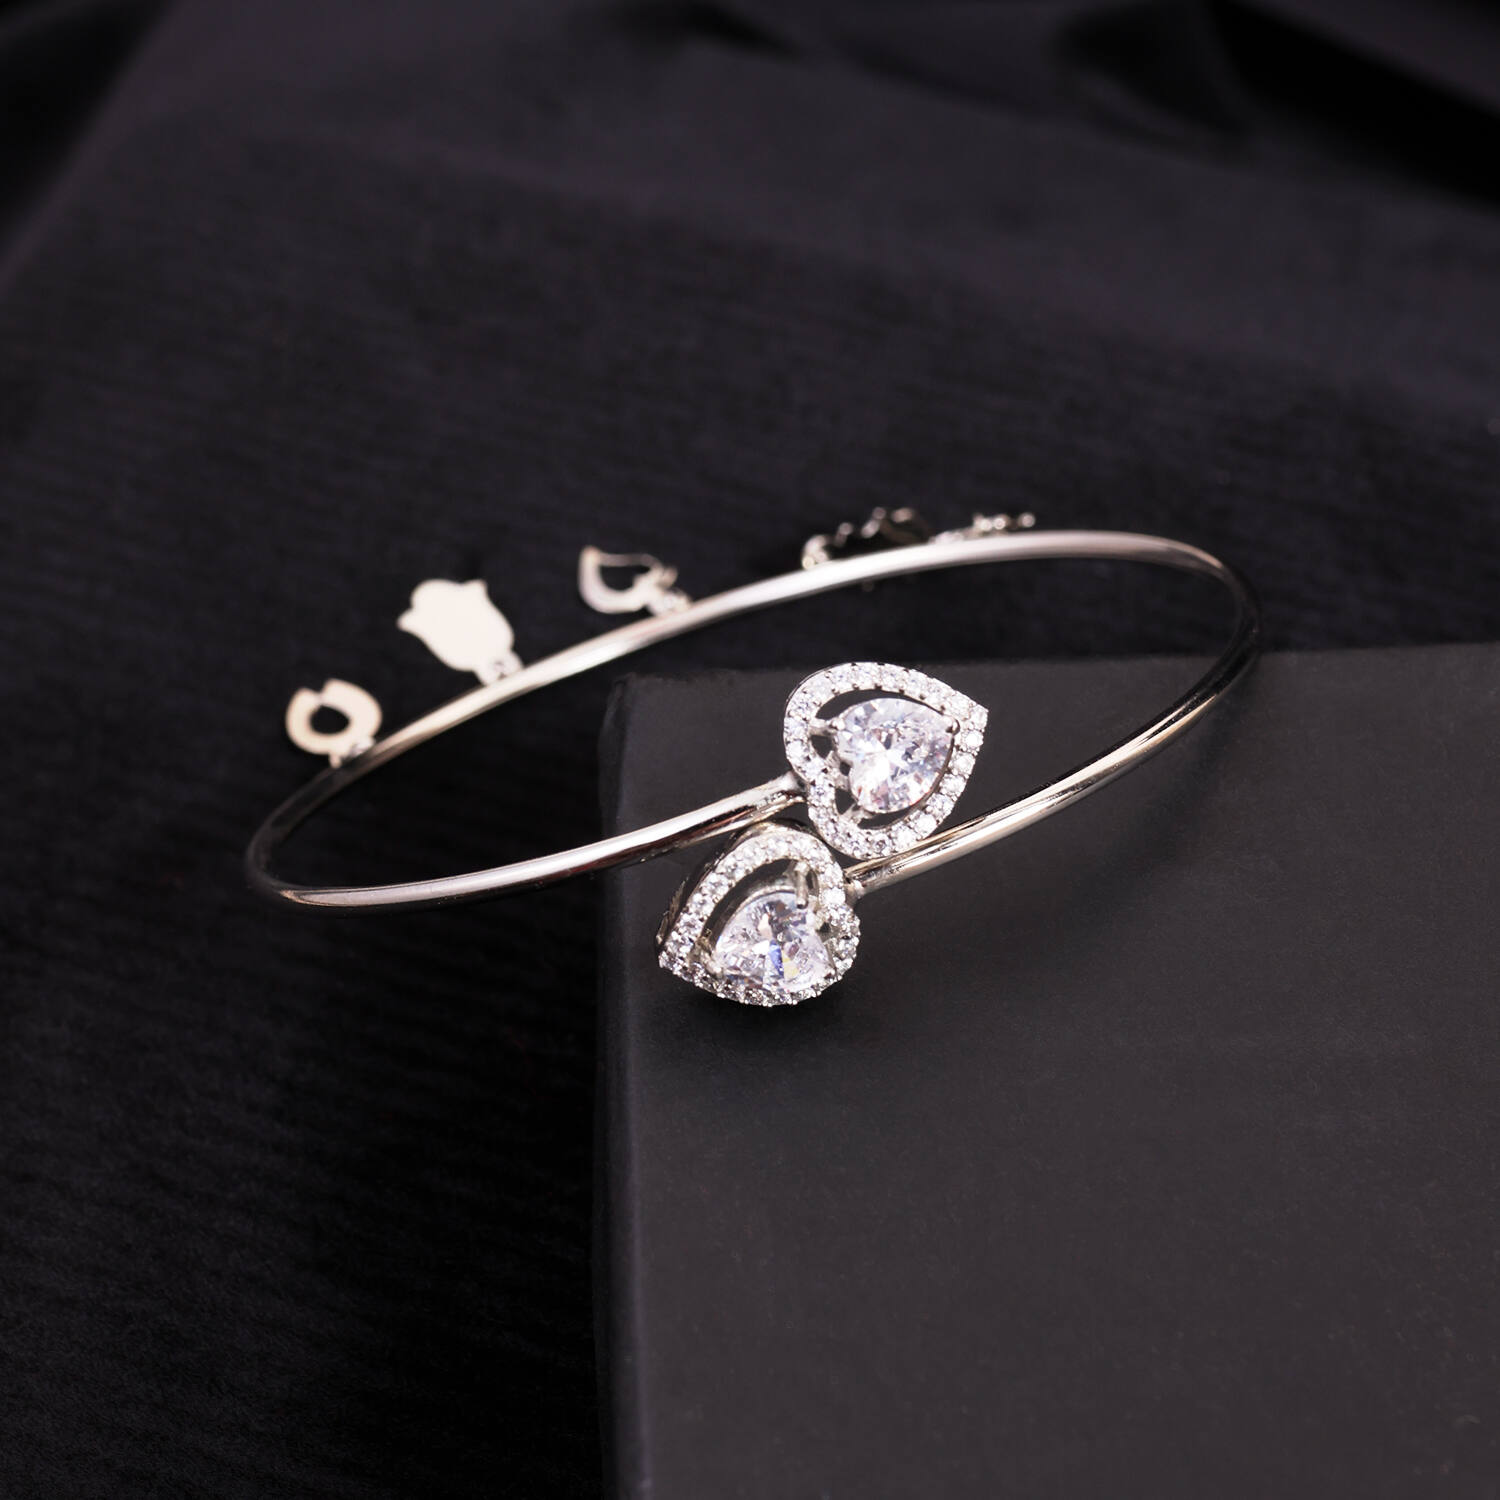 Buy Diamond Bracelet, Solitaire Diamond Bracelet, 14k 18k Solid Gold  Diamond Bracelet, Simple Anniversary Gift Bracelet, Gift for Her Online in  India - Etsy